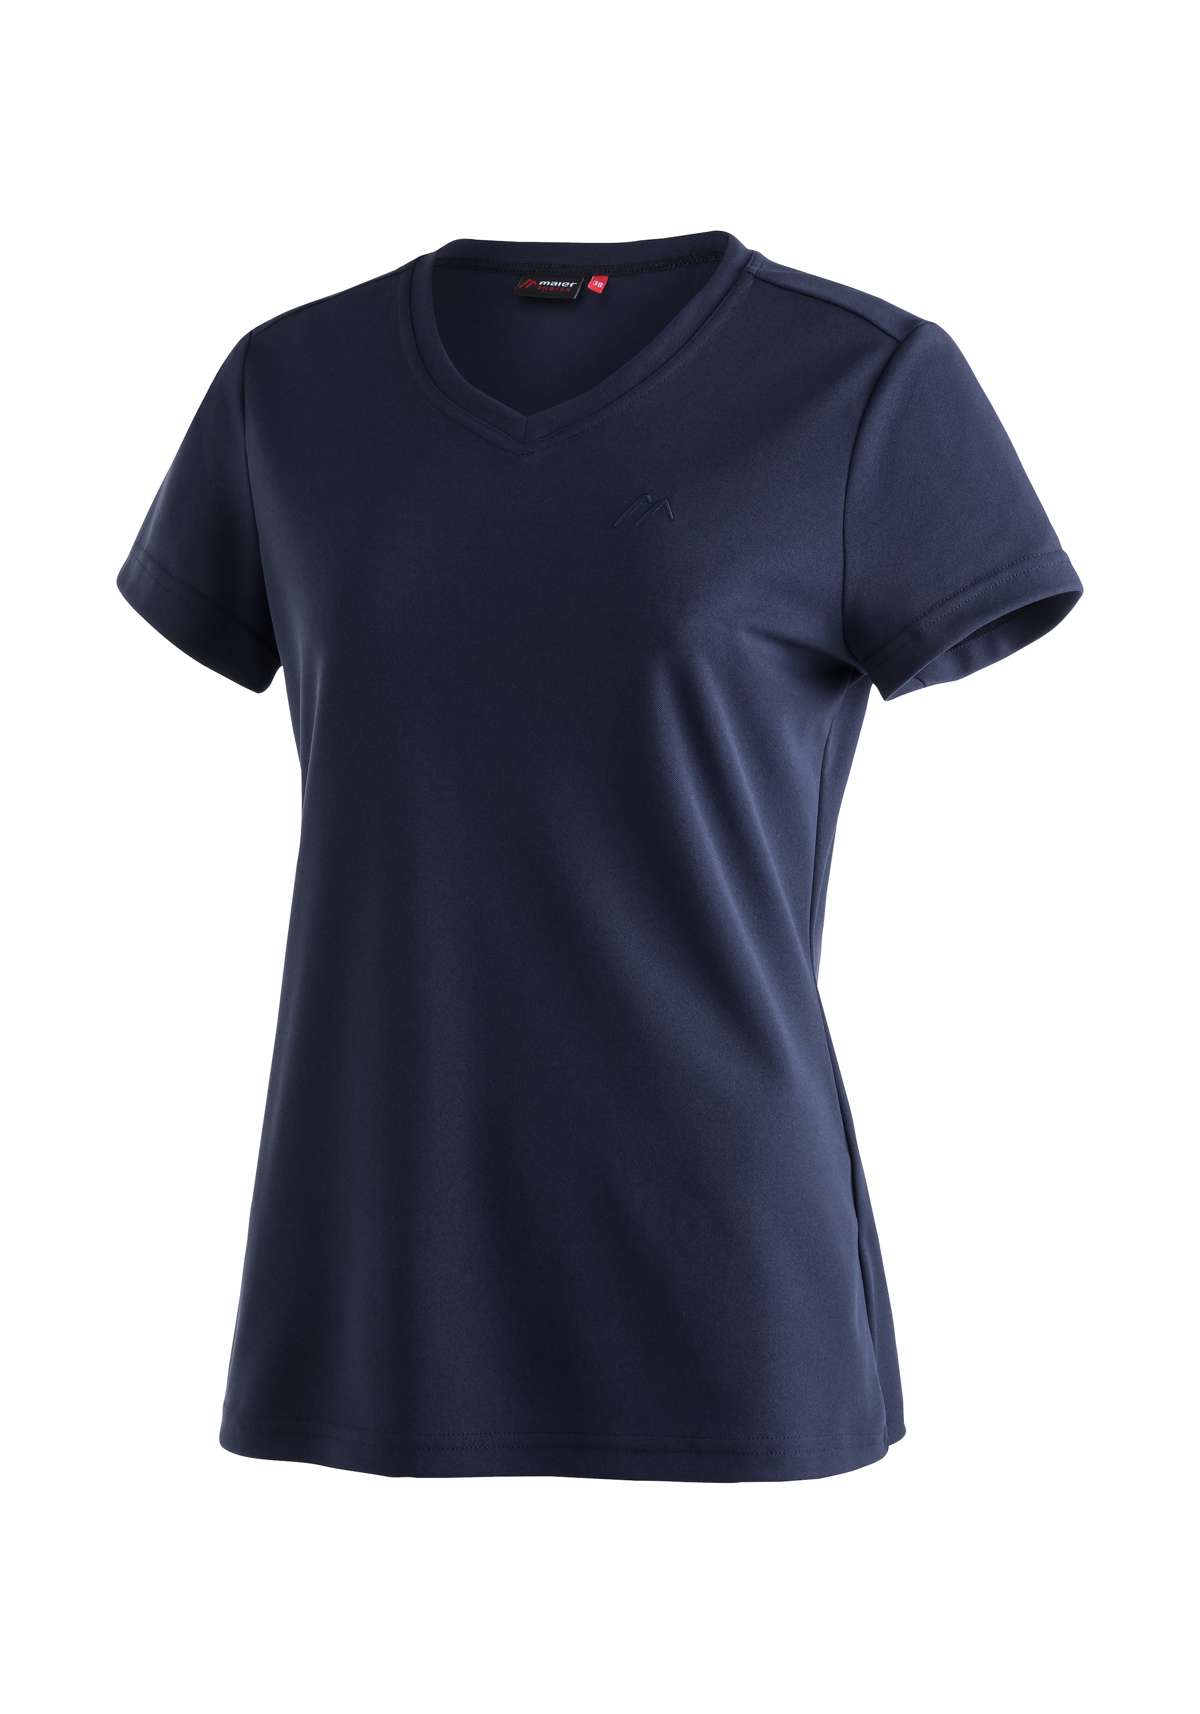 Функциональная рубашка, женская футболка, рубашка с короткими рукавами для походов и отдыха.